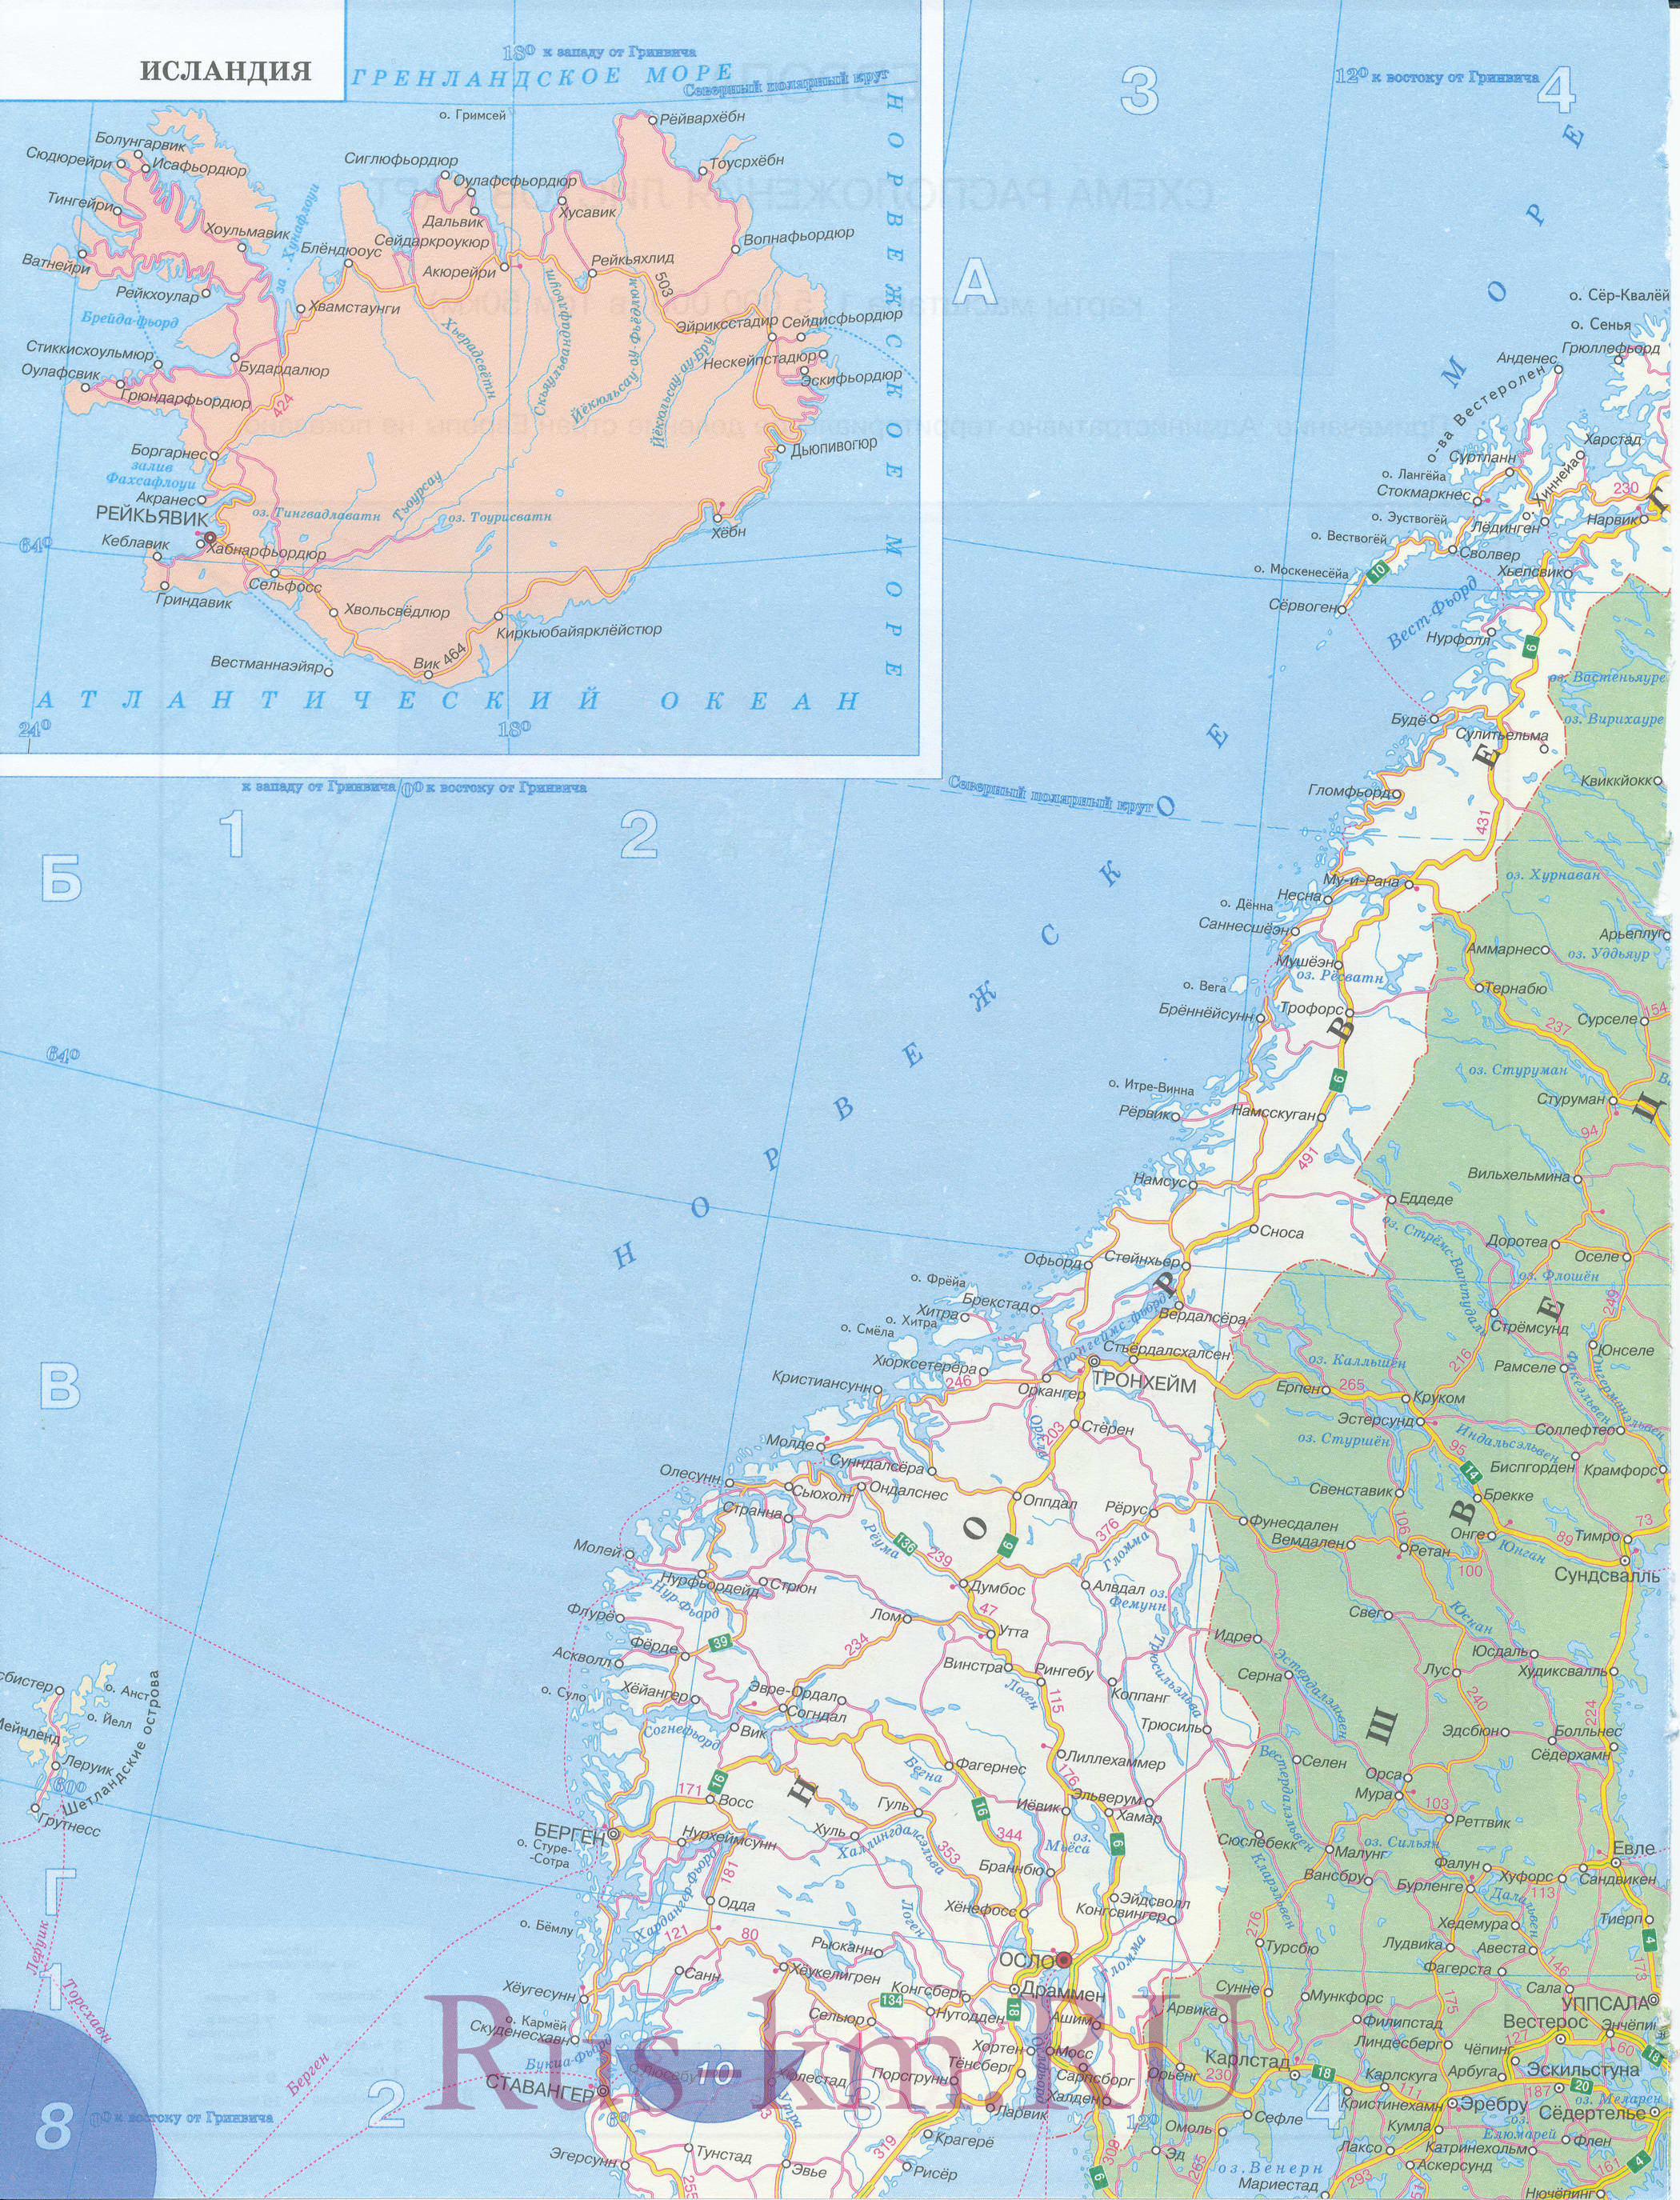 Карта дорог северной Европы. Подробная карта автодорог Северной Европы на русском языке - Норвегия, Швеция, Финляндия, Исландия, A0 - 